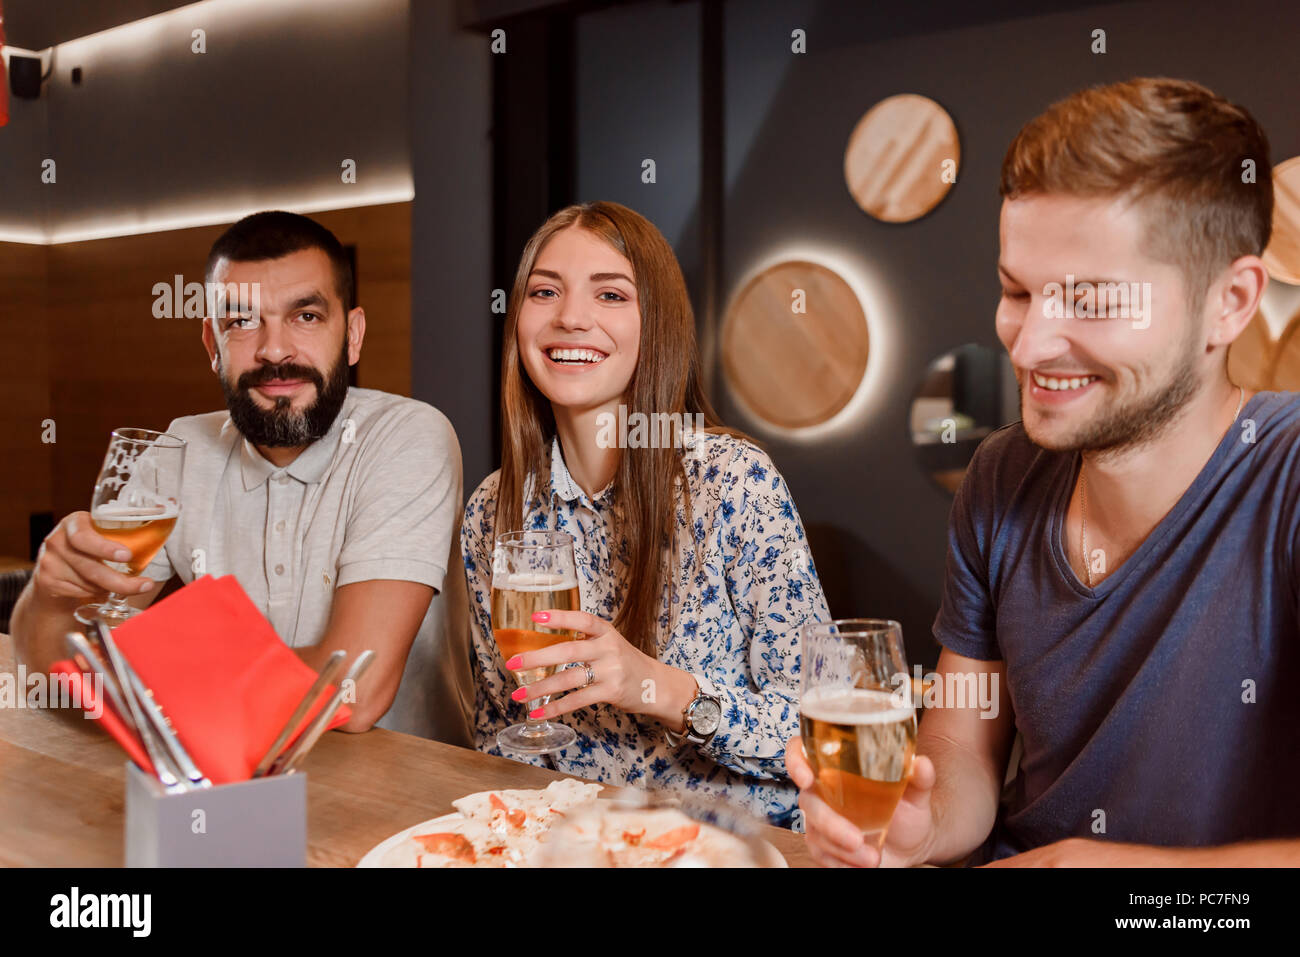 Vue de face de deux hommes barbus et une femme souriant, assis et tenant des verres avec de la bière dans les mains. Les amis s'amusant dans un café ou restaurant. Ils ont également manger de délicieux pizzas. Banque D'Images